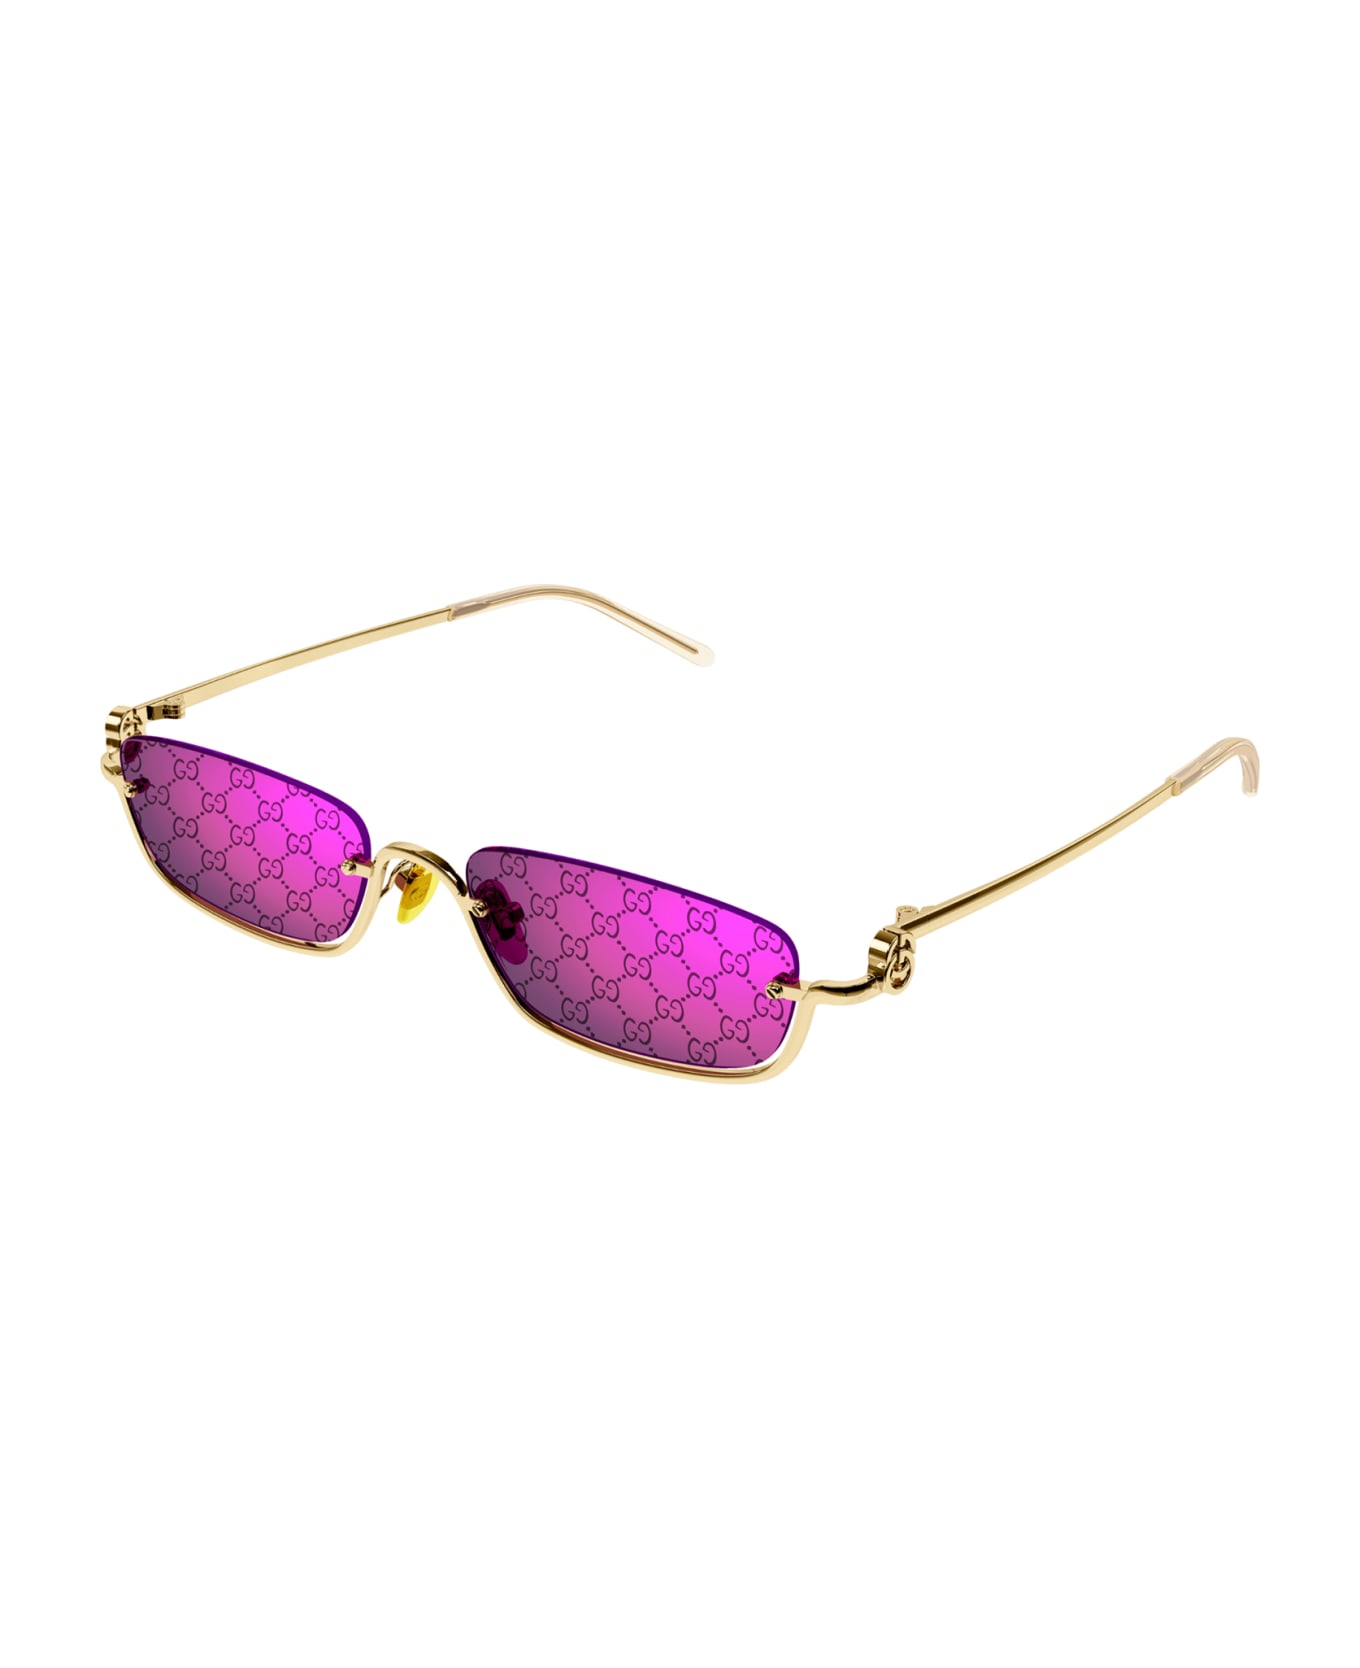 Gucci Eyewear 1fa64li0a - 005 gold gold violet